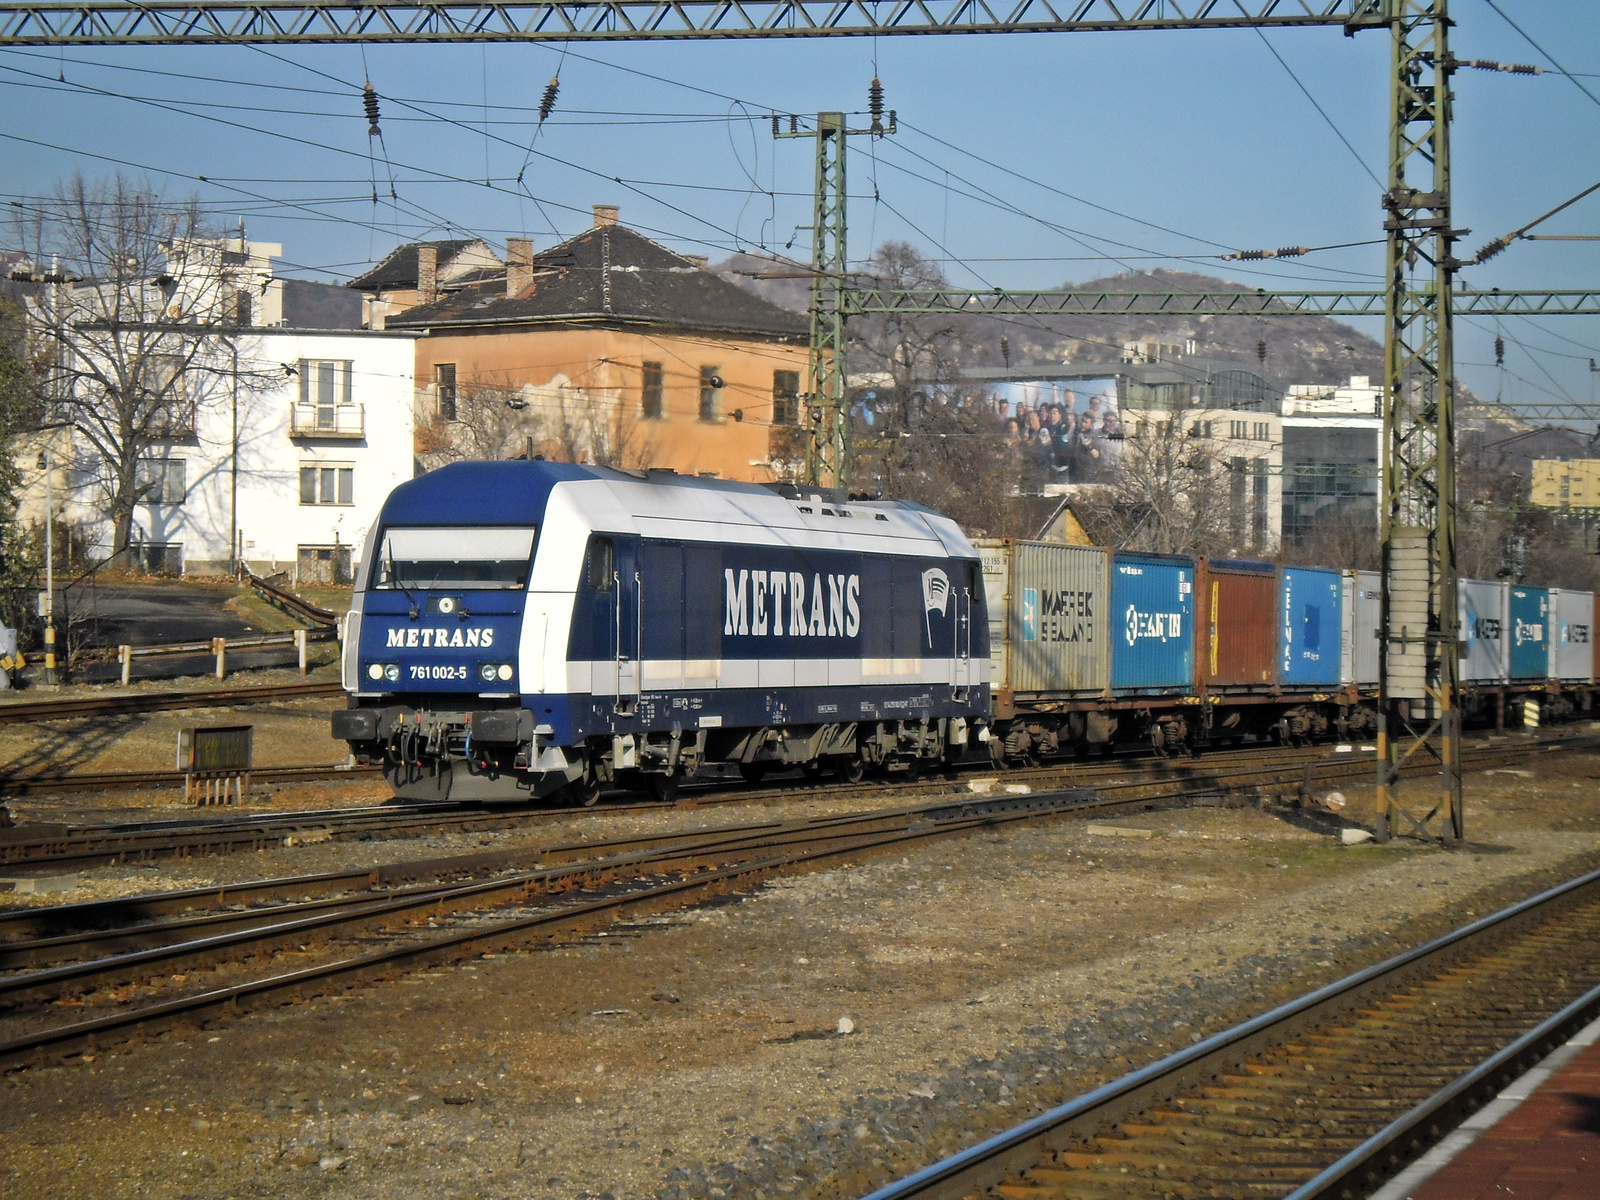 Metrans 761 002-5